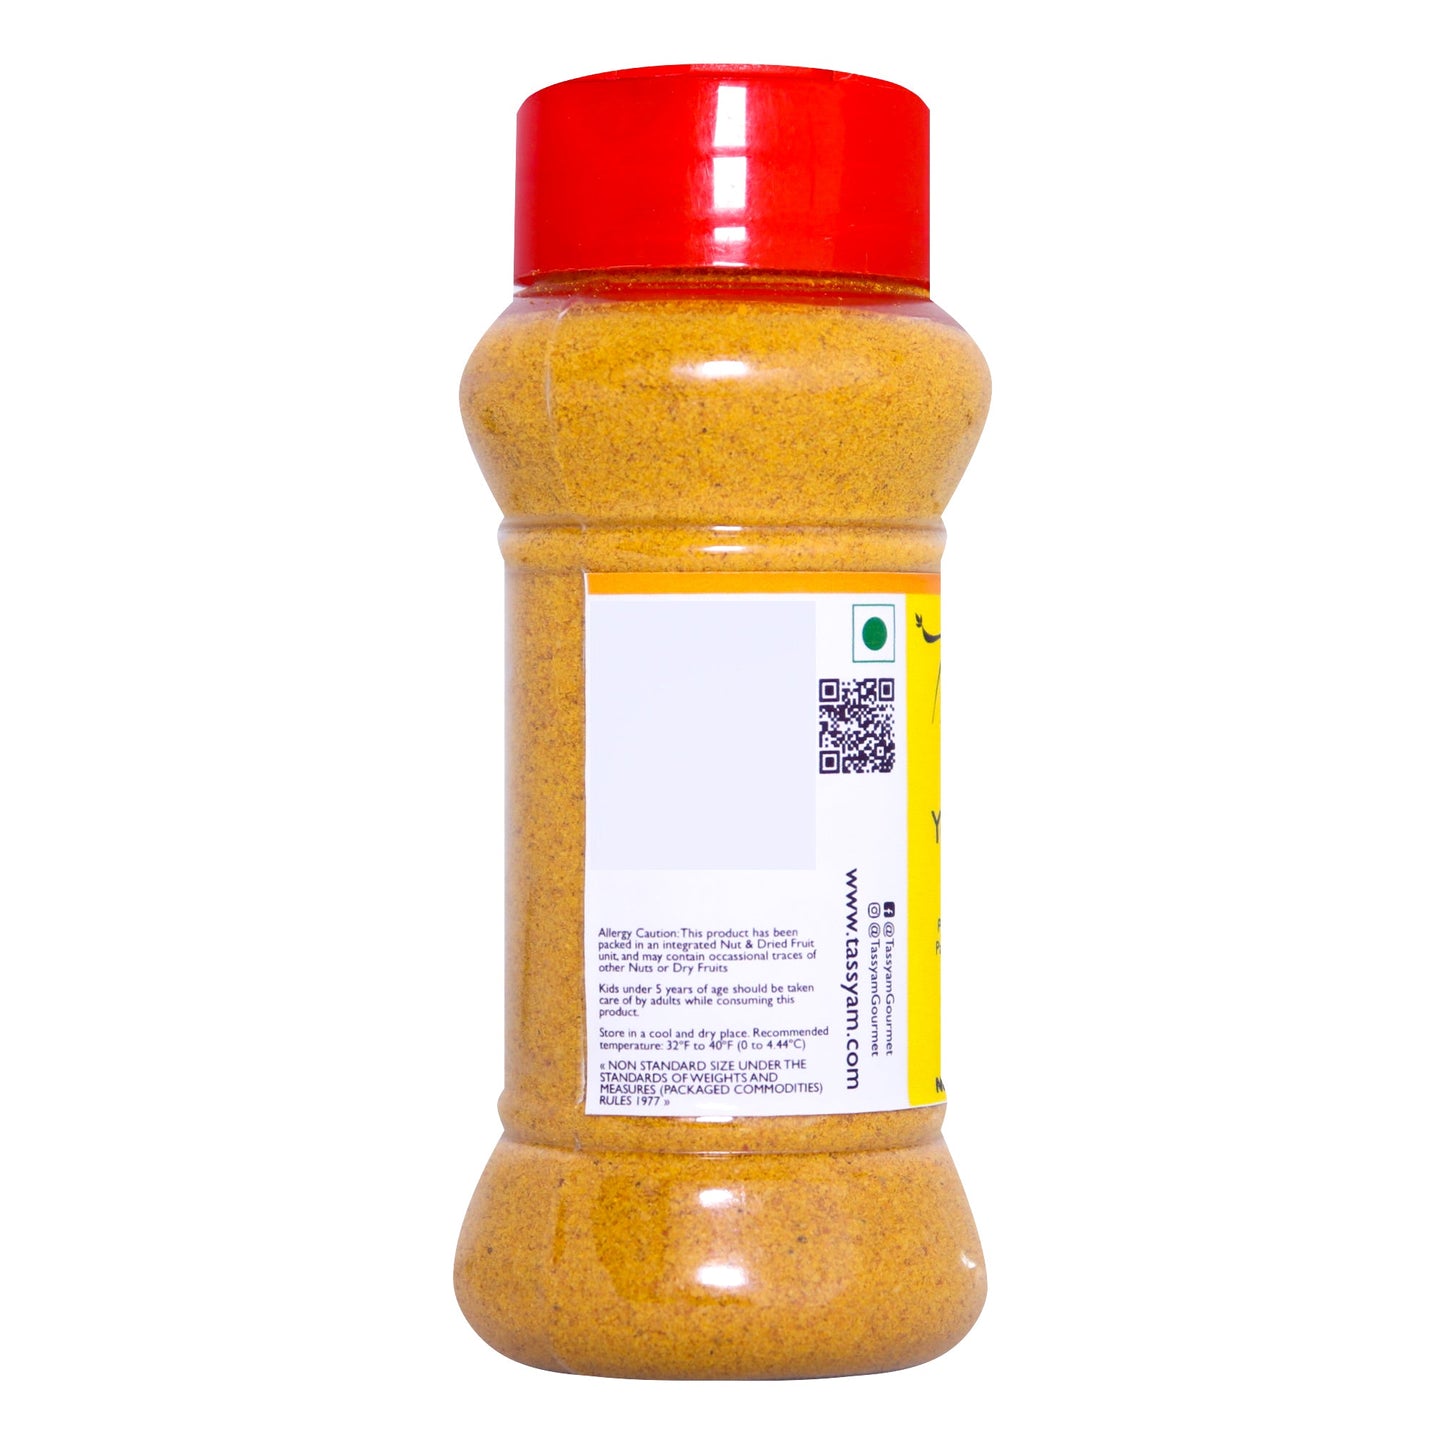 Premium Yellow Chilli - Tassyam Organics